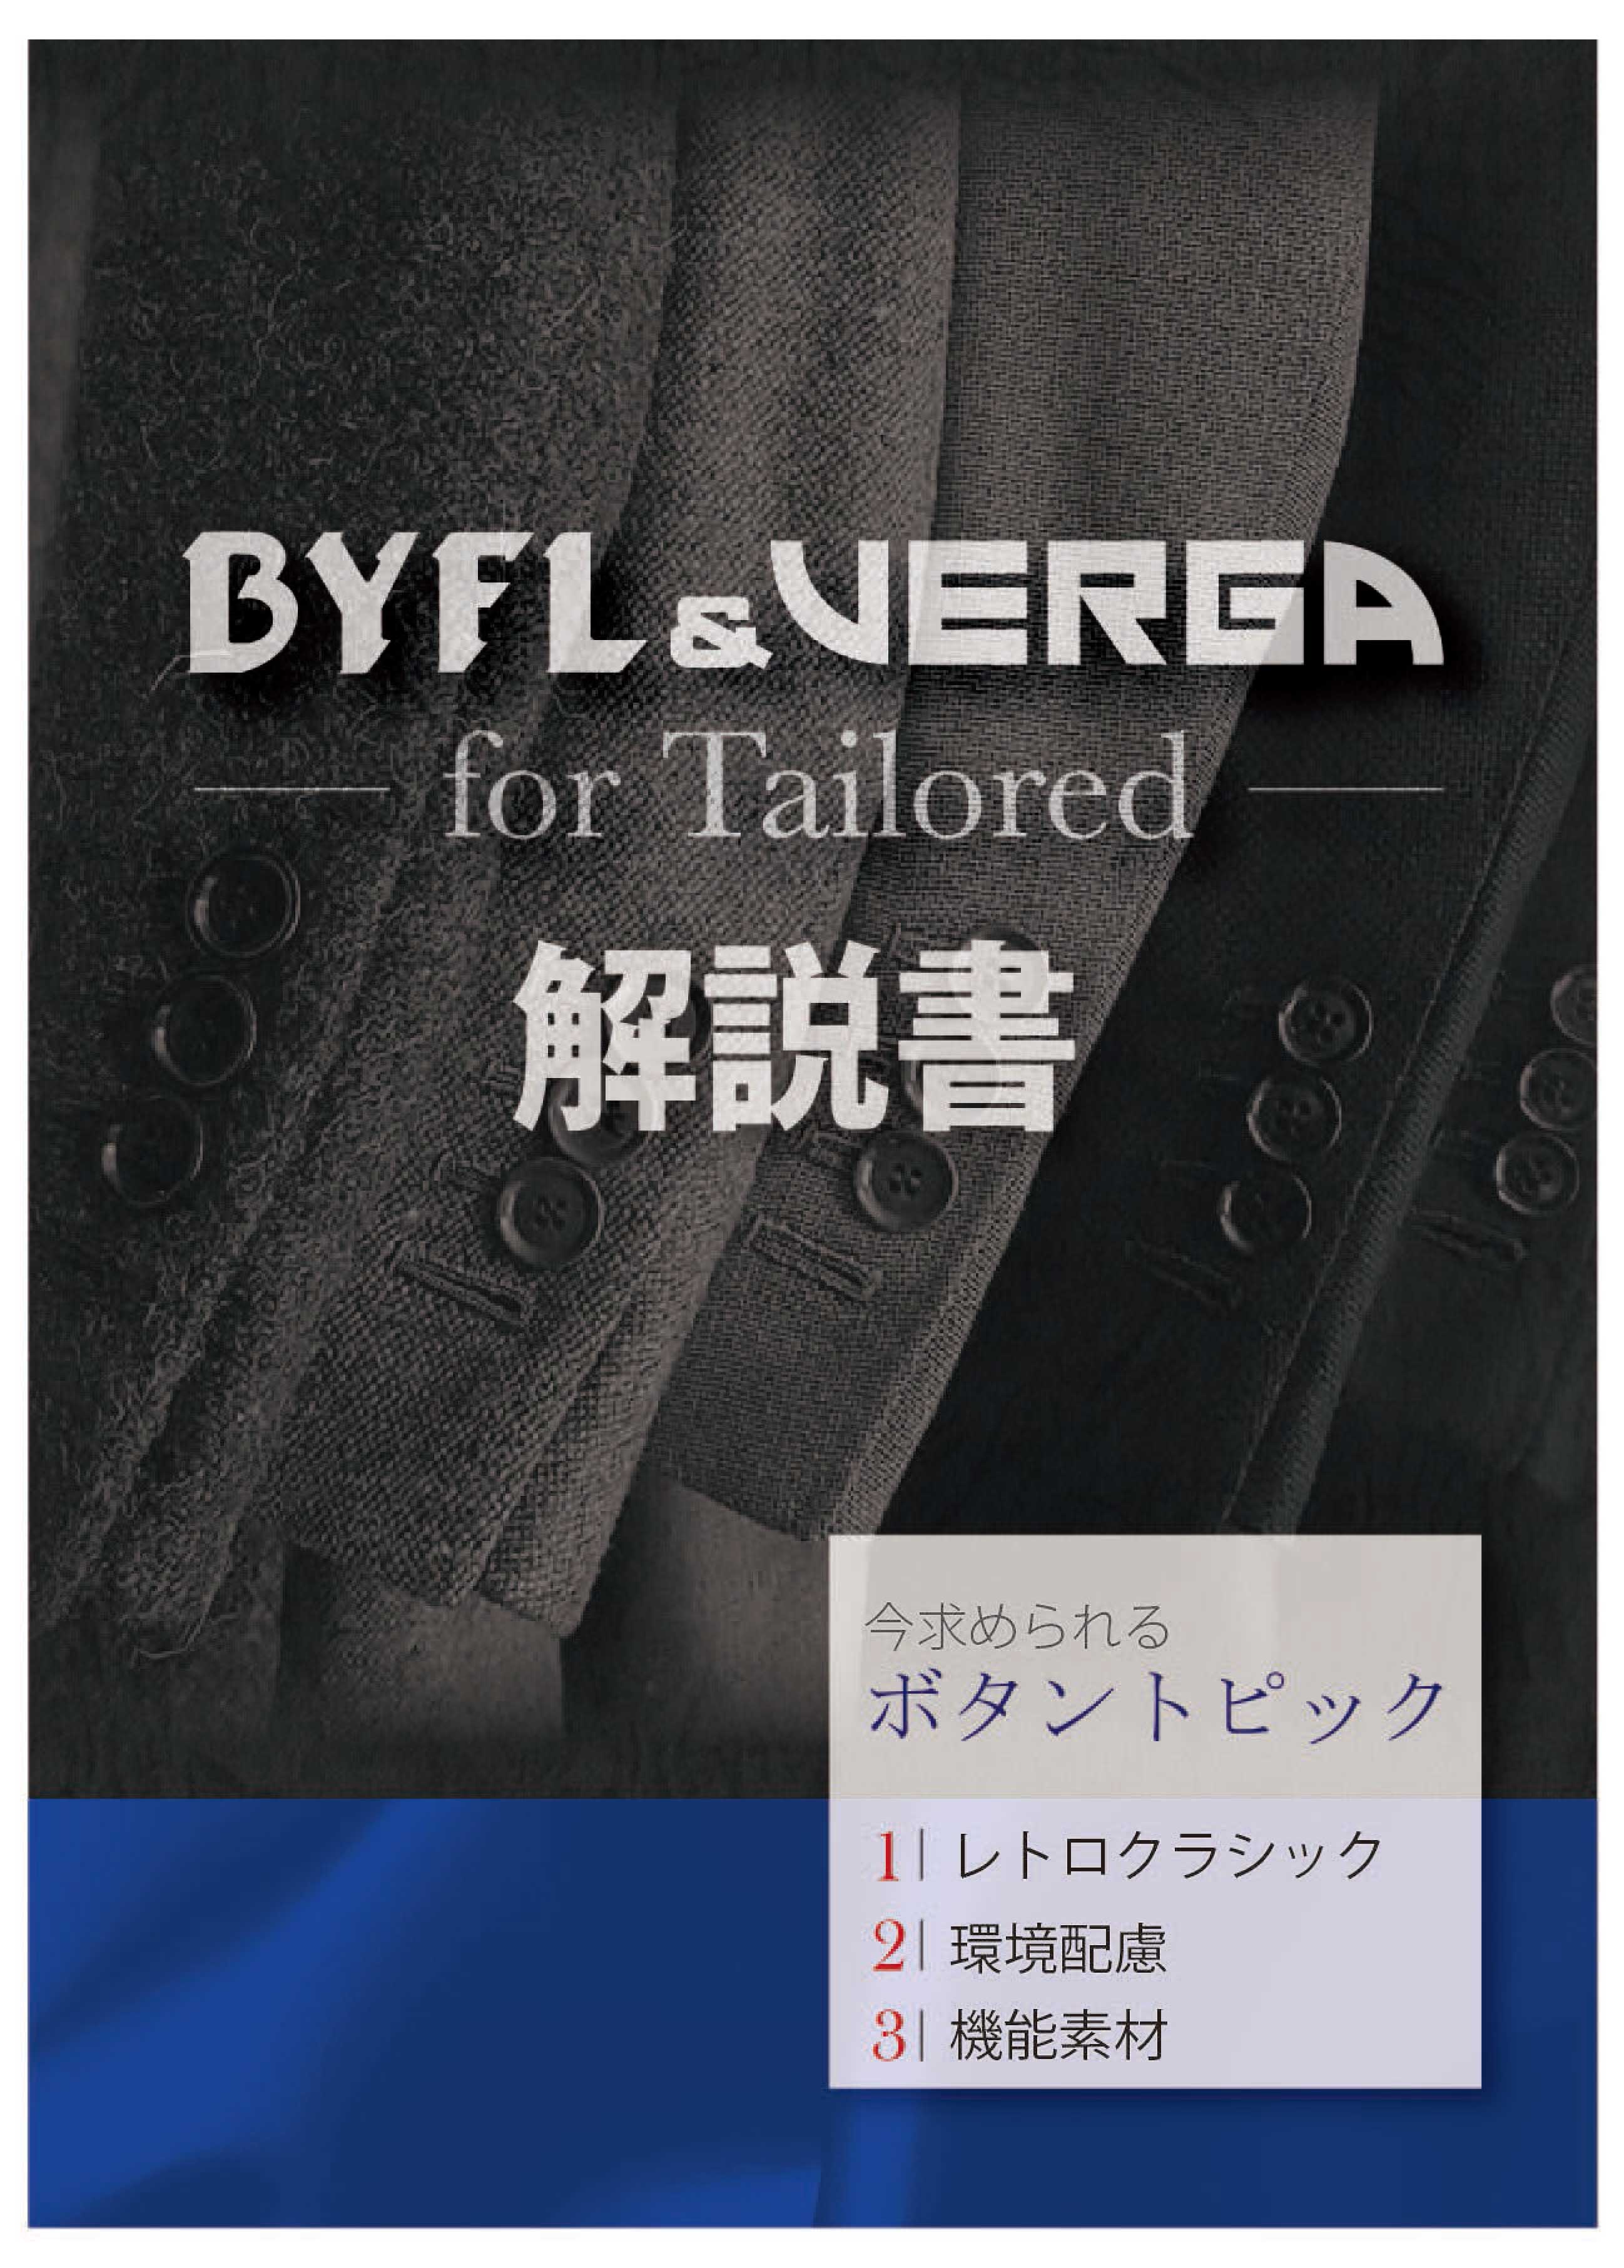 ボタン/服飾パーツの株式会社アイリス｜カタログ紹介｜ BYFL&VERGA for 